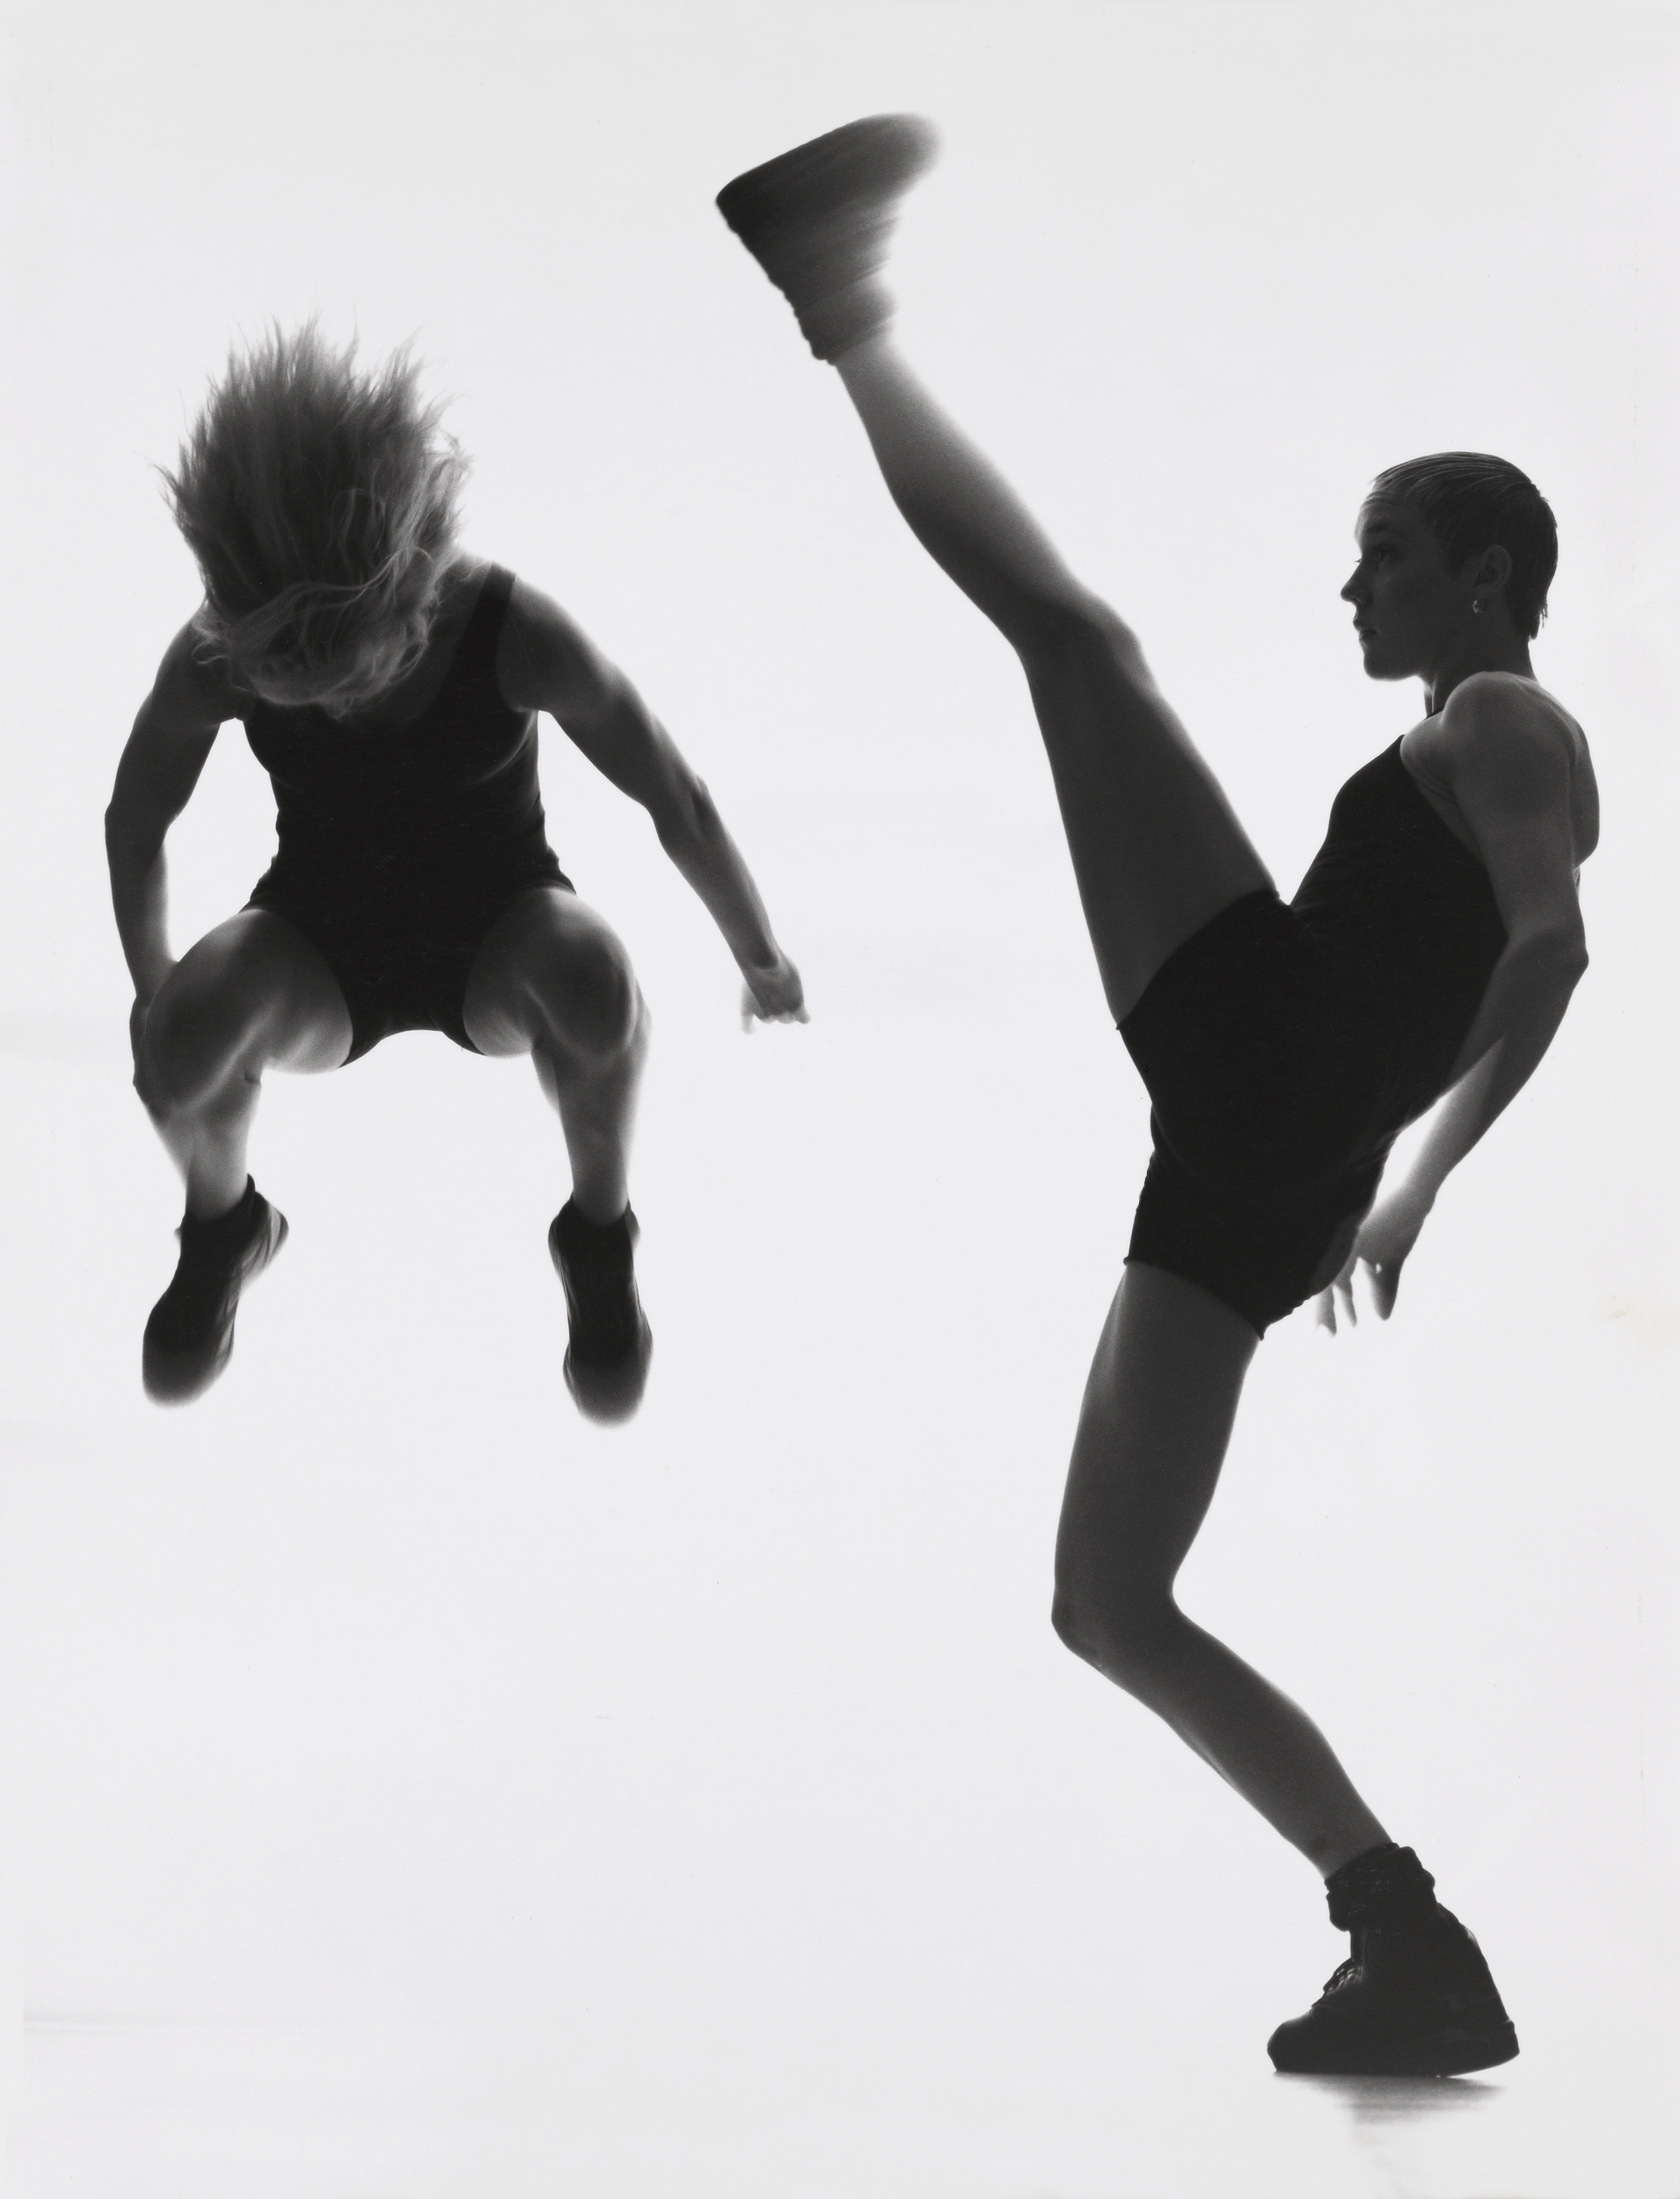 Två dansare in action - en i jämfotahopp och en sträcker upp ena benet ovanför huvudet